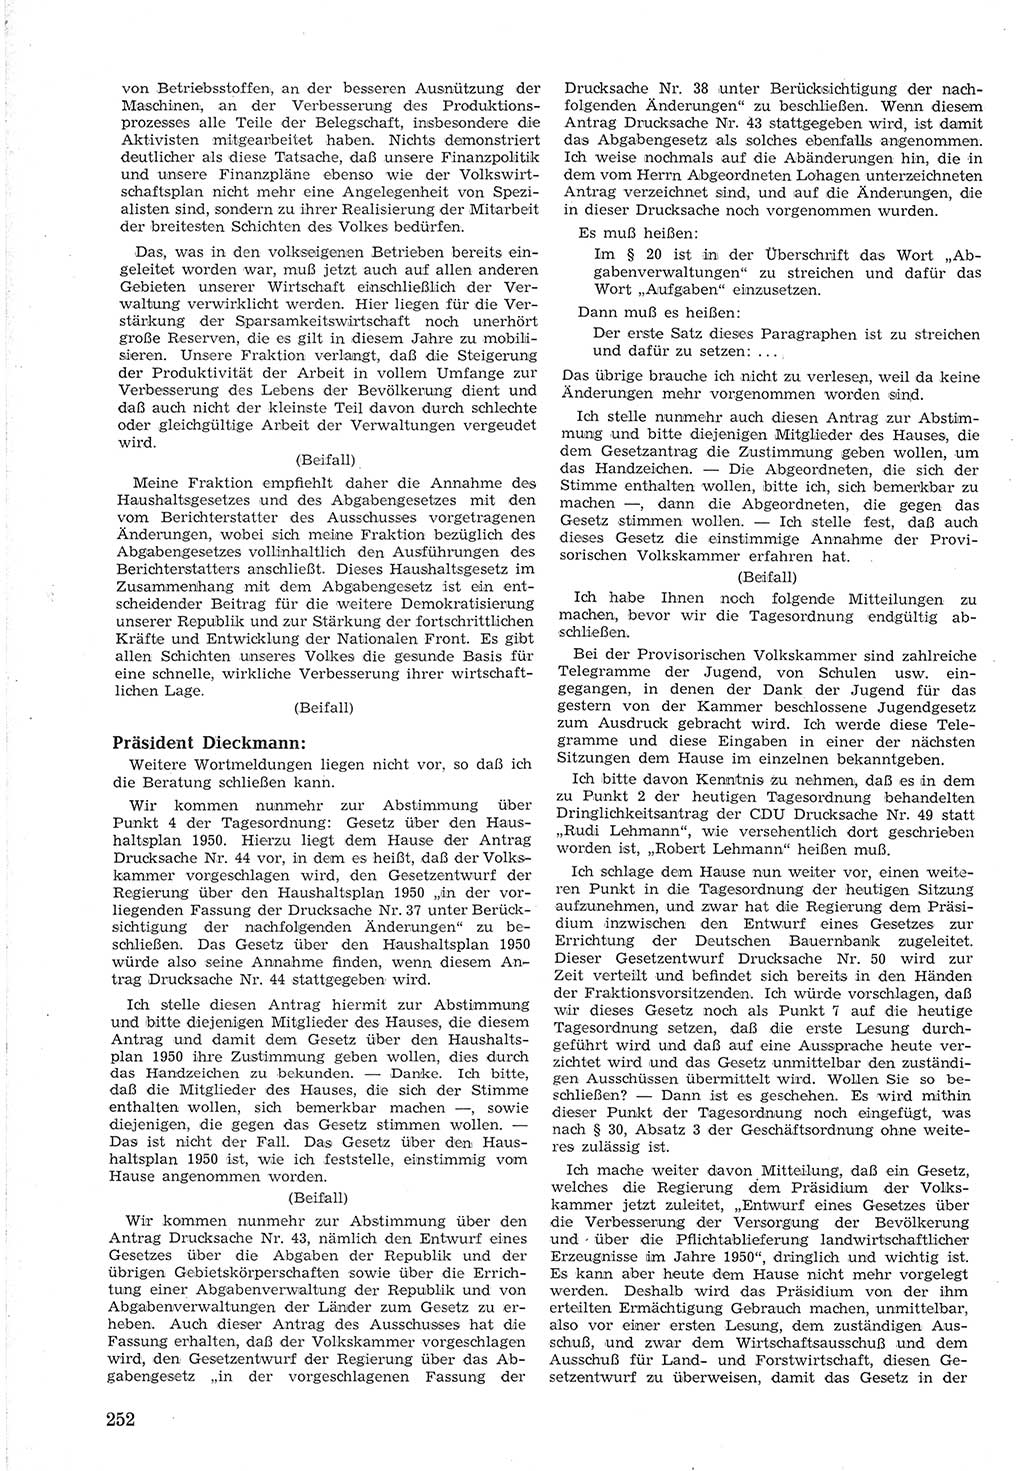 Provisorische Volkskammer (VK) der Deutschen Demokratischen Republik (DDR) 1949-1950, Dokument 266 (Prov. VK DDR 1949-1950, Dok. 266)